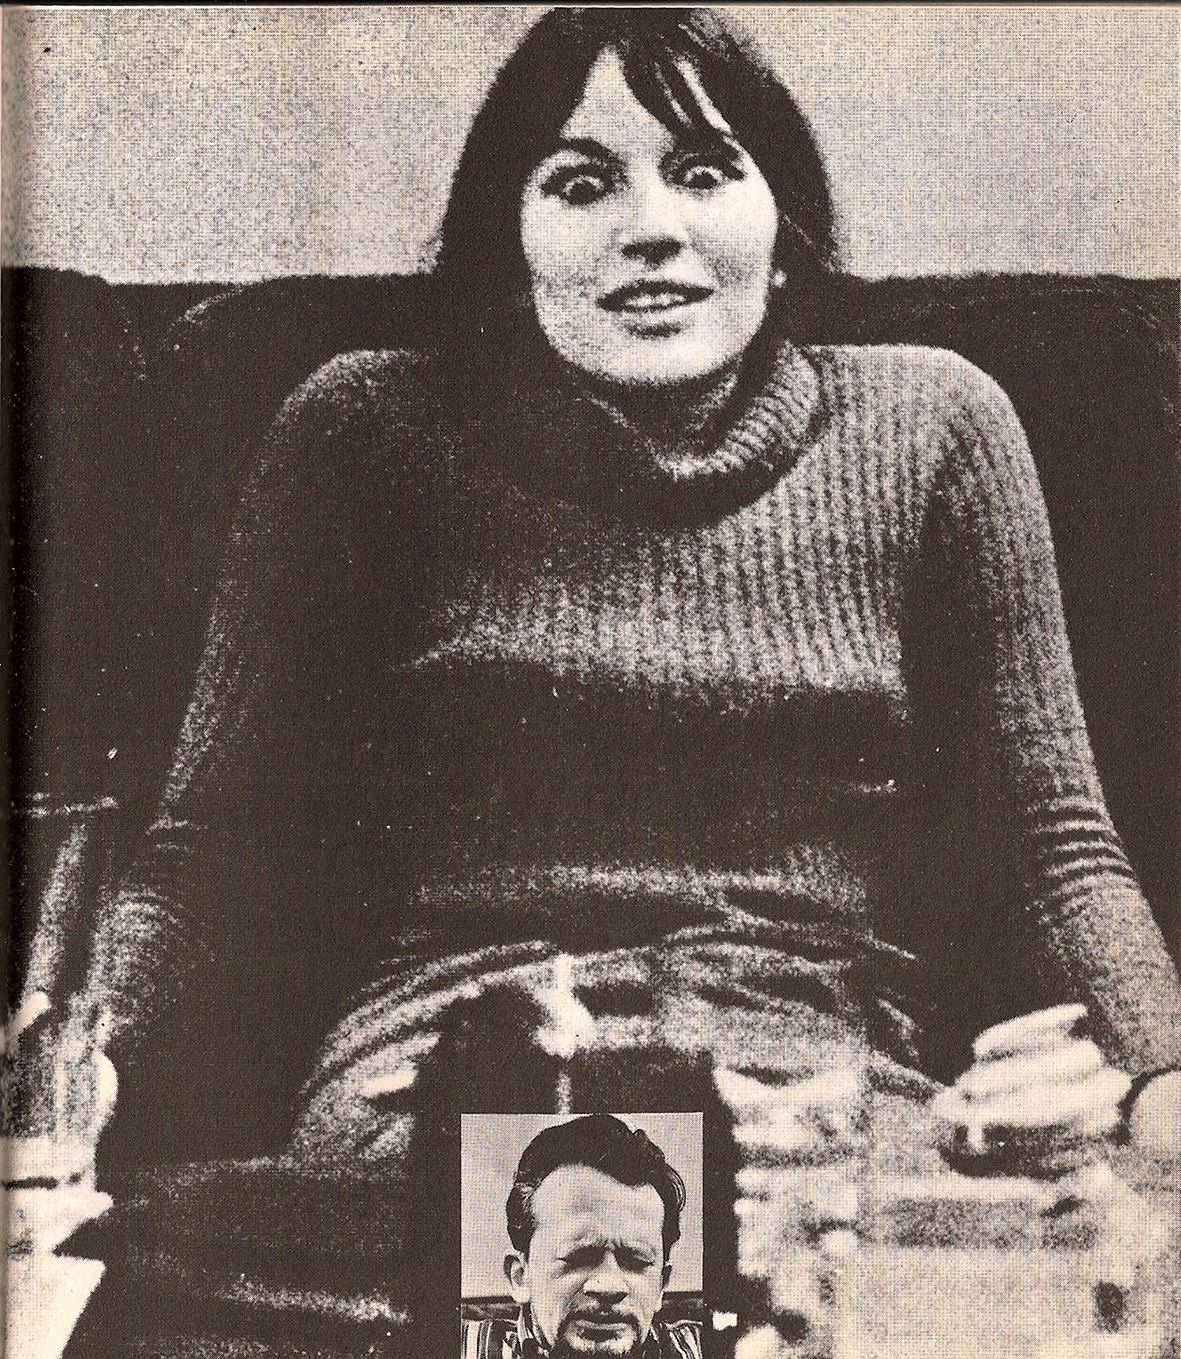 LSD in Planet Magazin 1970